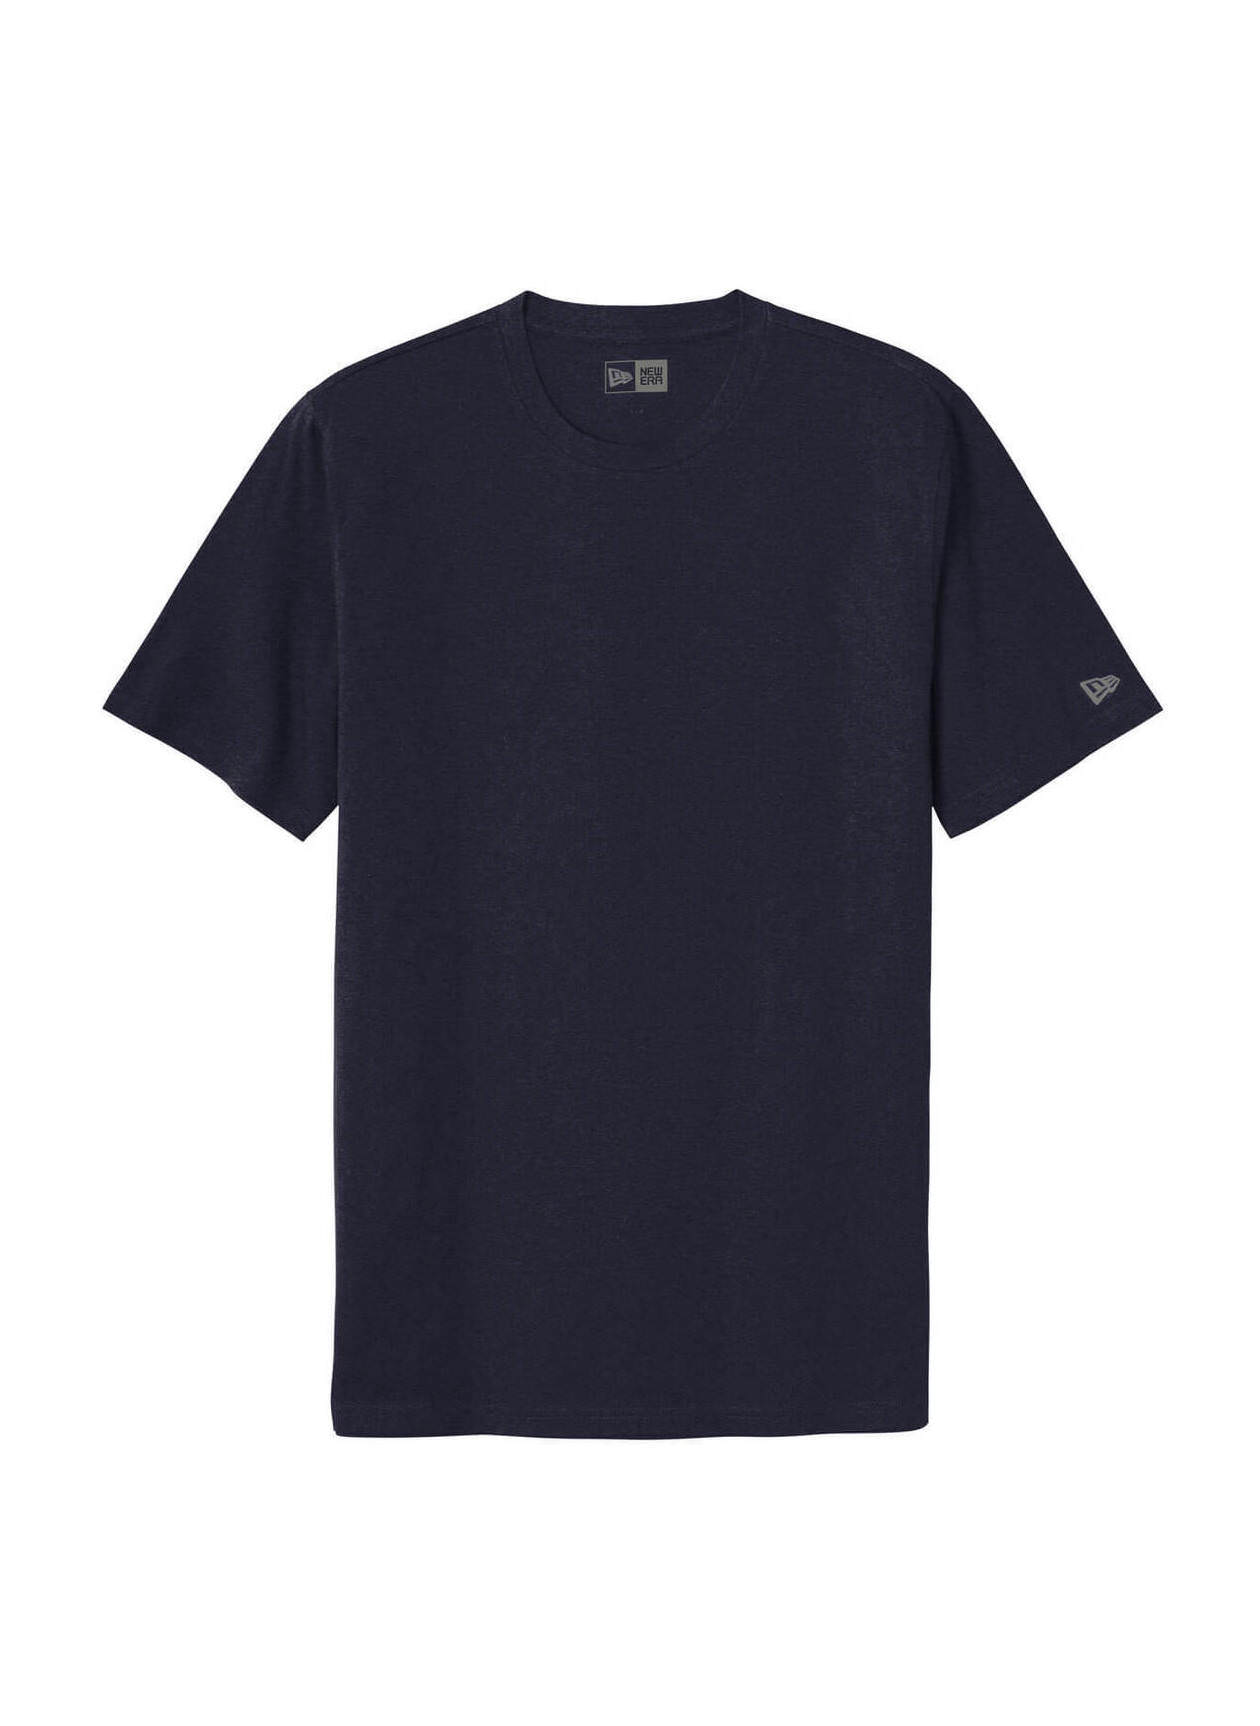 New Era Men's True Navy Tri-Blend T-Shirt